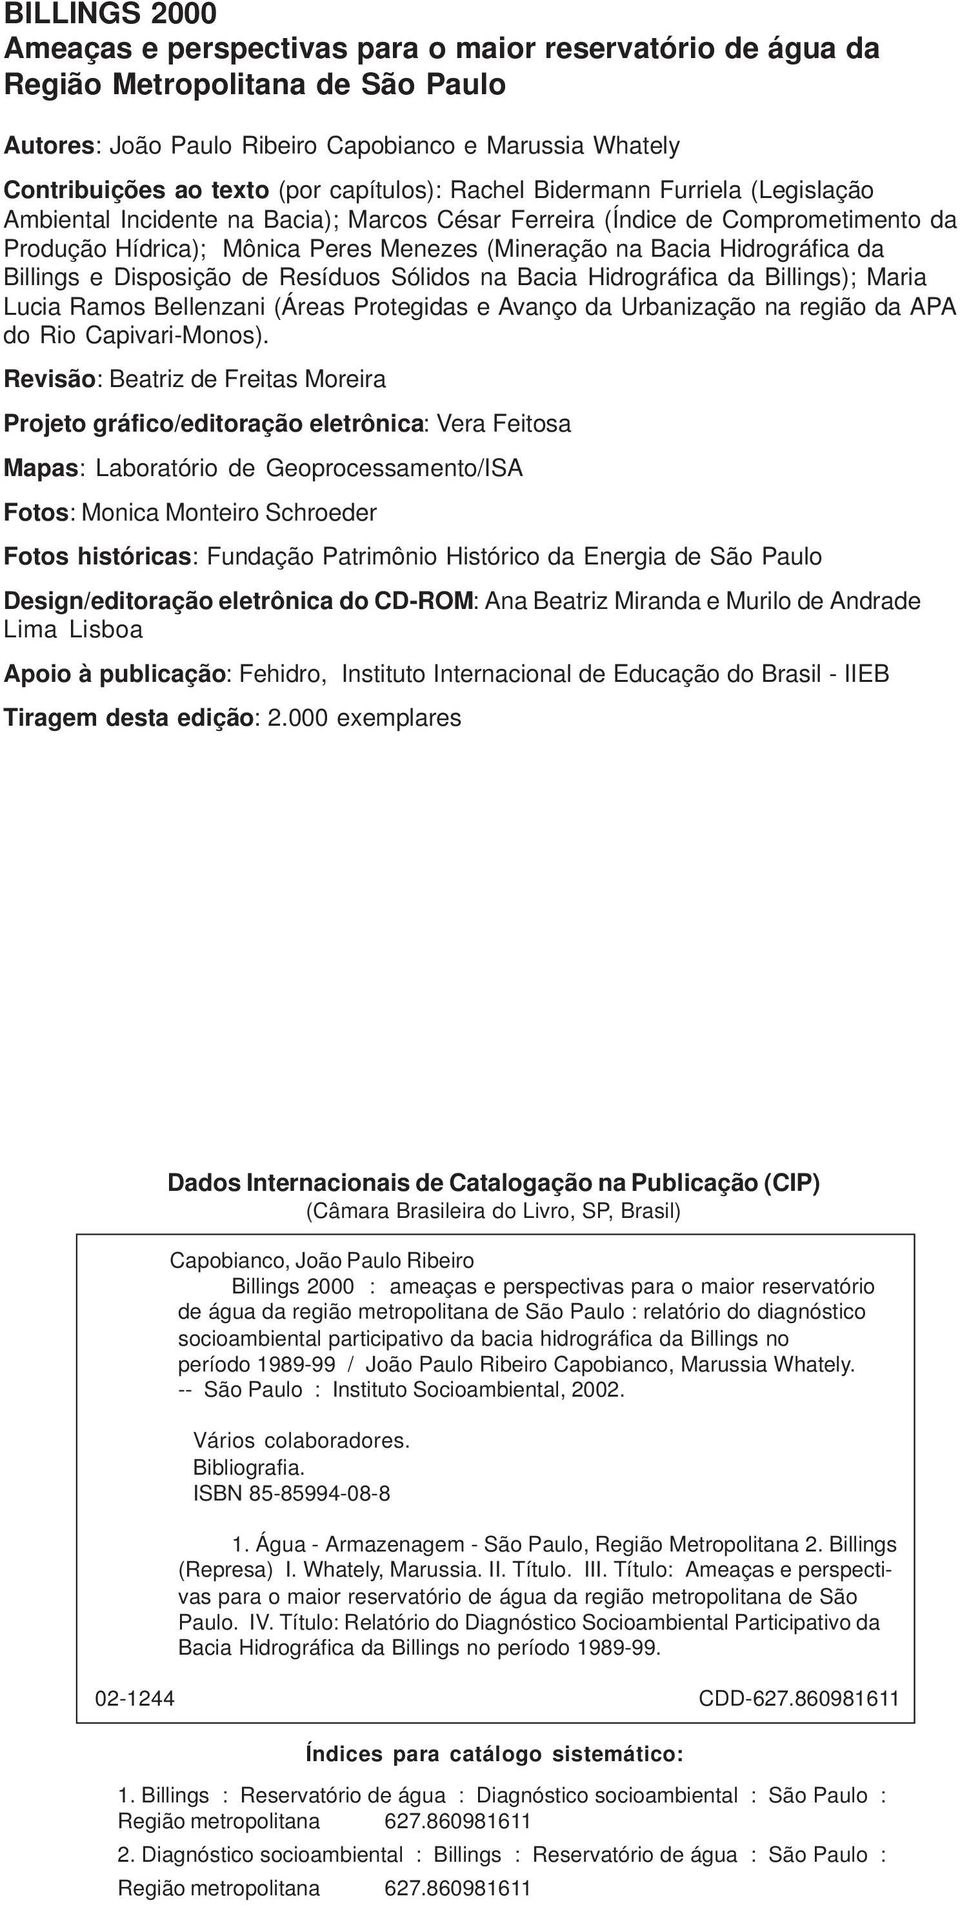 Hidrográfica da Billings e Disposição de Resíduos Sólidos na Bacia Hidrográfica da Billings); Maria Lucia Ramos Bellenzani (Áreas Protegidas e Avanço da Urbanização na região da APA do Rio